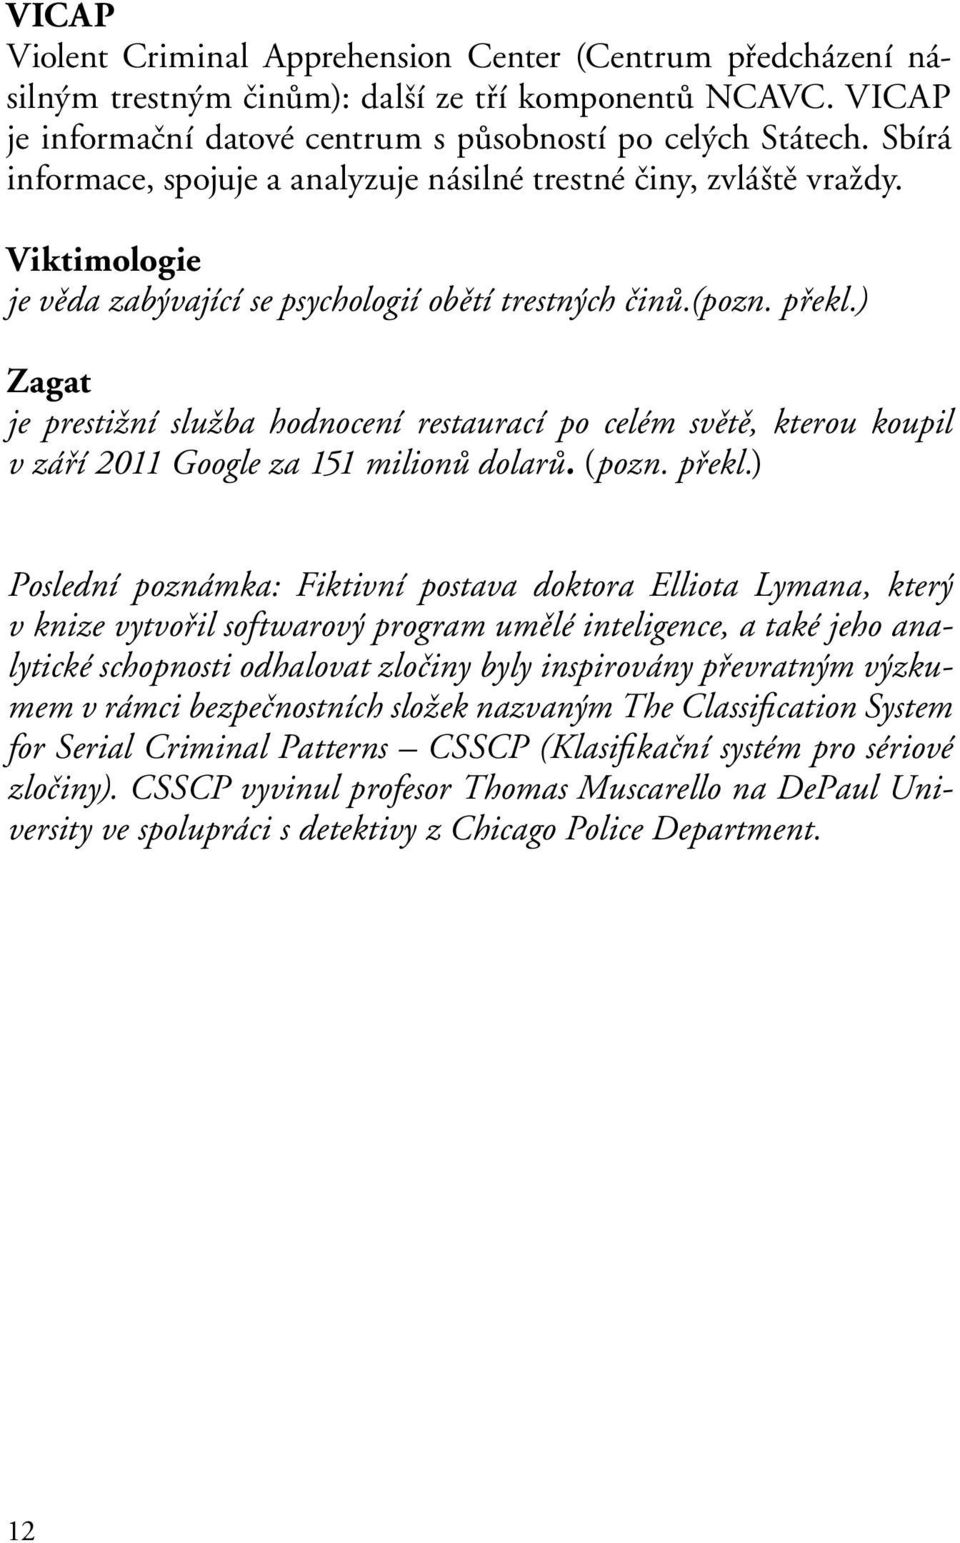 ) Zagat je prestižní služba hodnocení restaurací po celém světě, kterou koupil v září 2011 Google za 151 milionů dolarů. (pozn. překl.